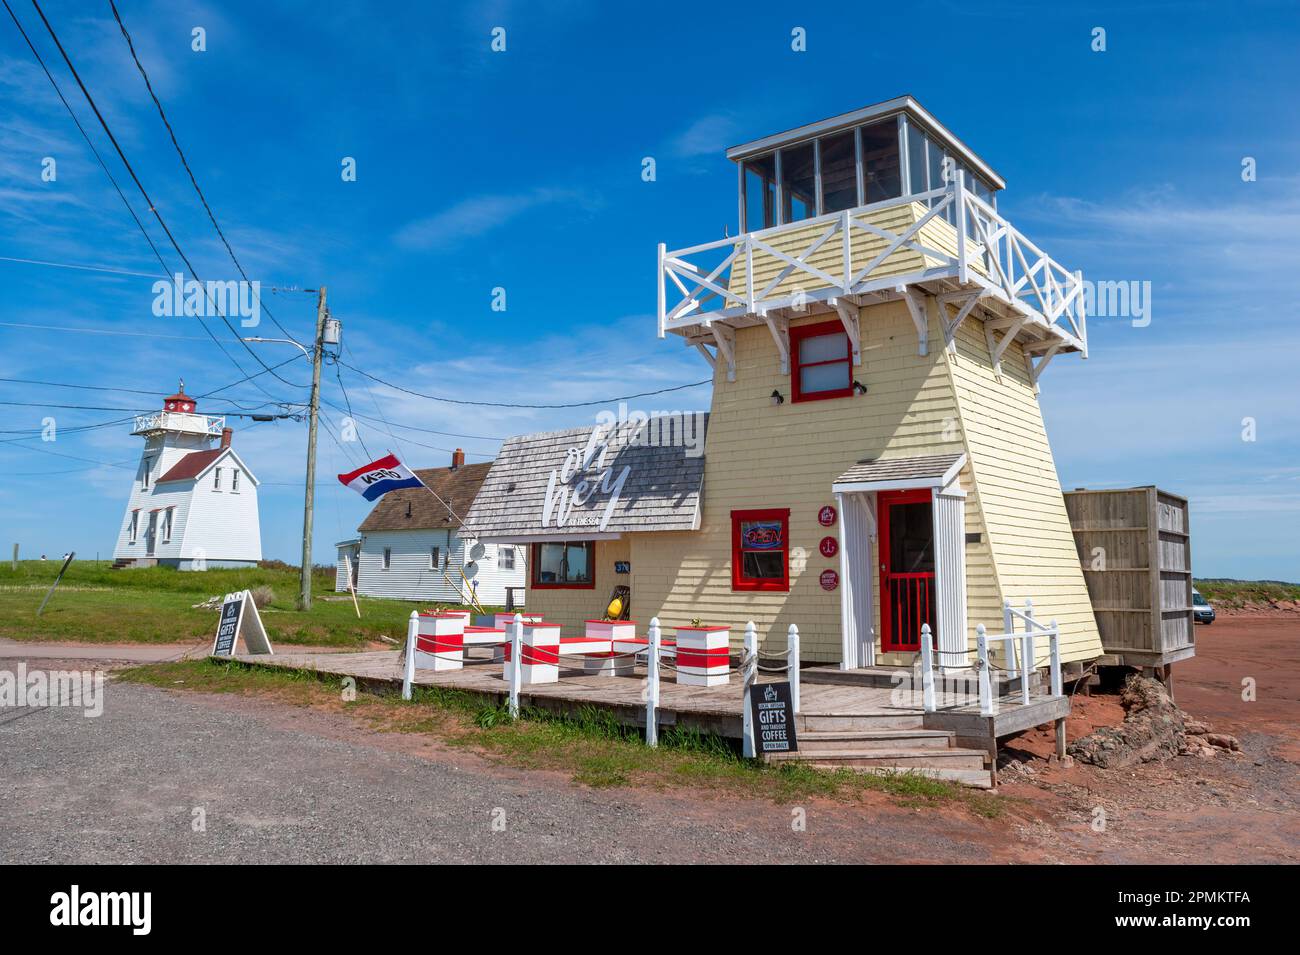 Oh Hey by the Sea – une boutique de cadeaux dans un bâtiment ressemblant à un phare. Le phare du port peut être vu sur la gauche. North Rustico, Île-du-Prince-Édouard. Banque D'Images